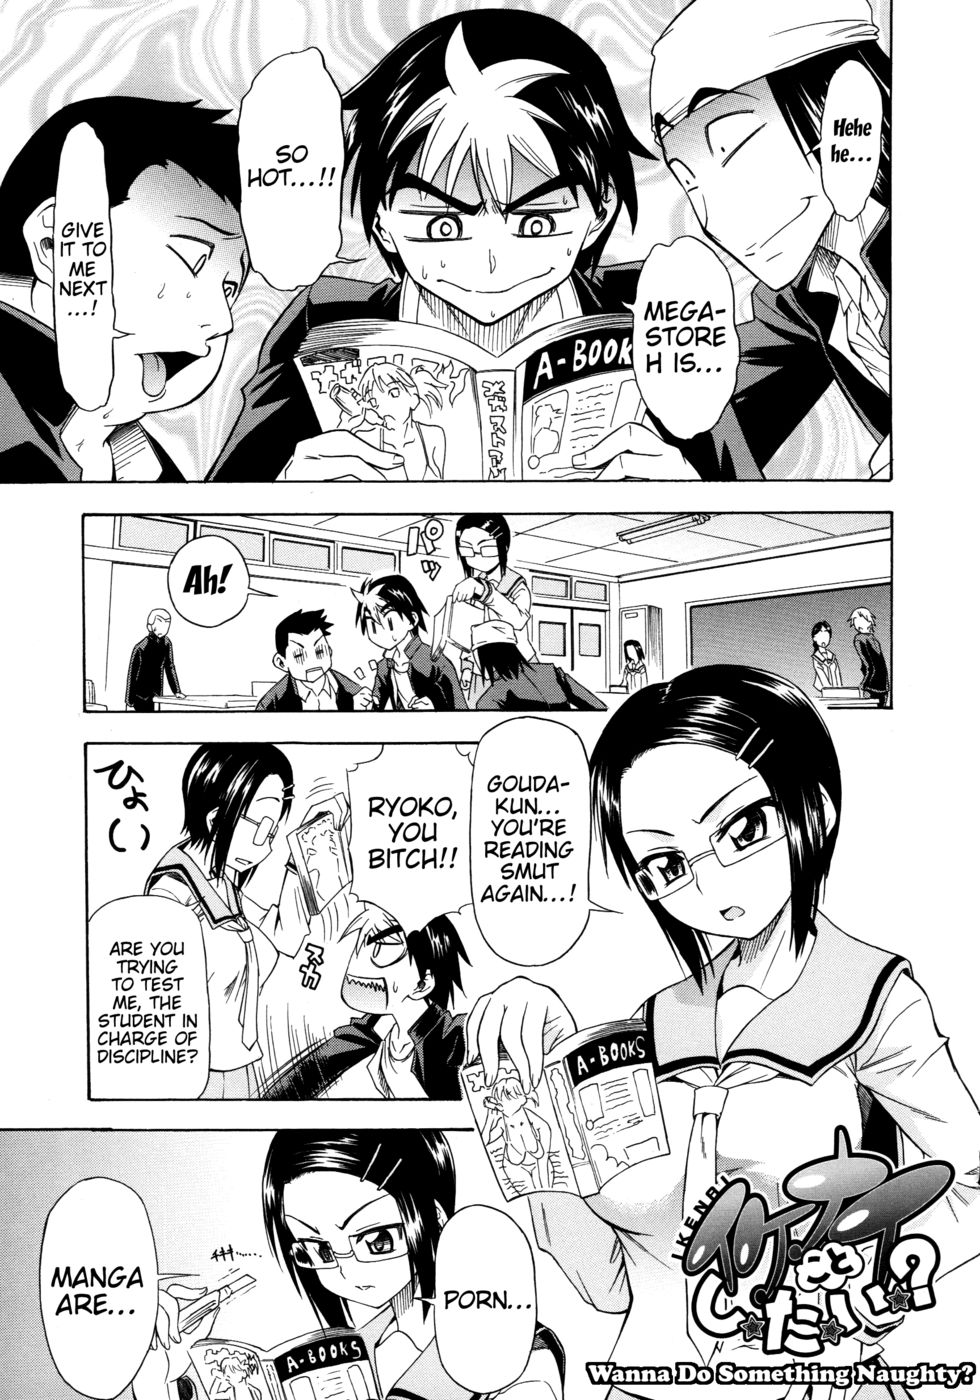 Hentai Manga Comic-Wanna Do Something Naughty?-Read-1